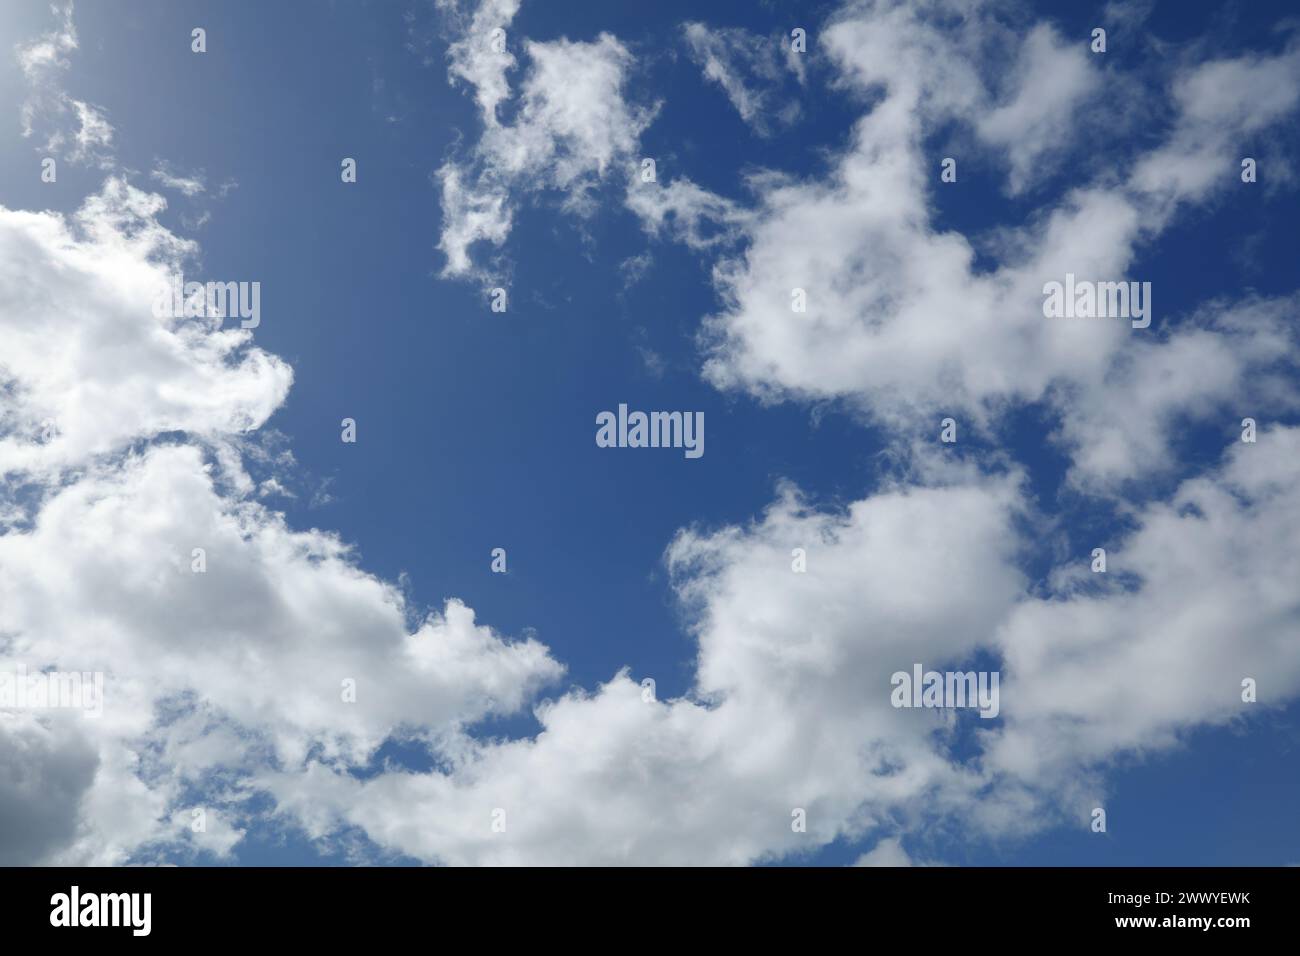 Flauschige weiße Wolken am blauen Himmel Stockfoto